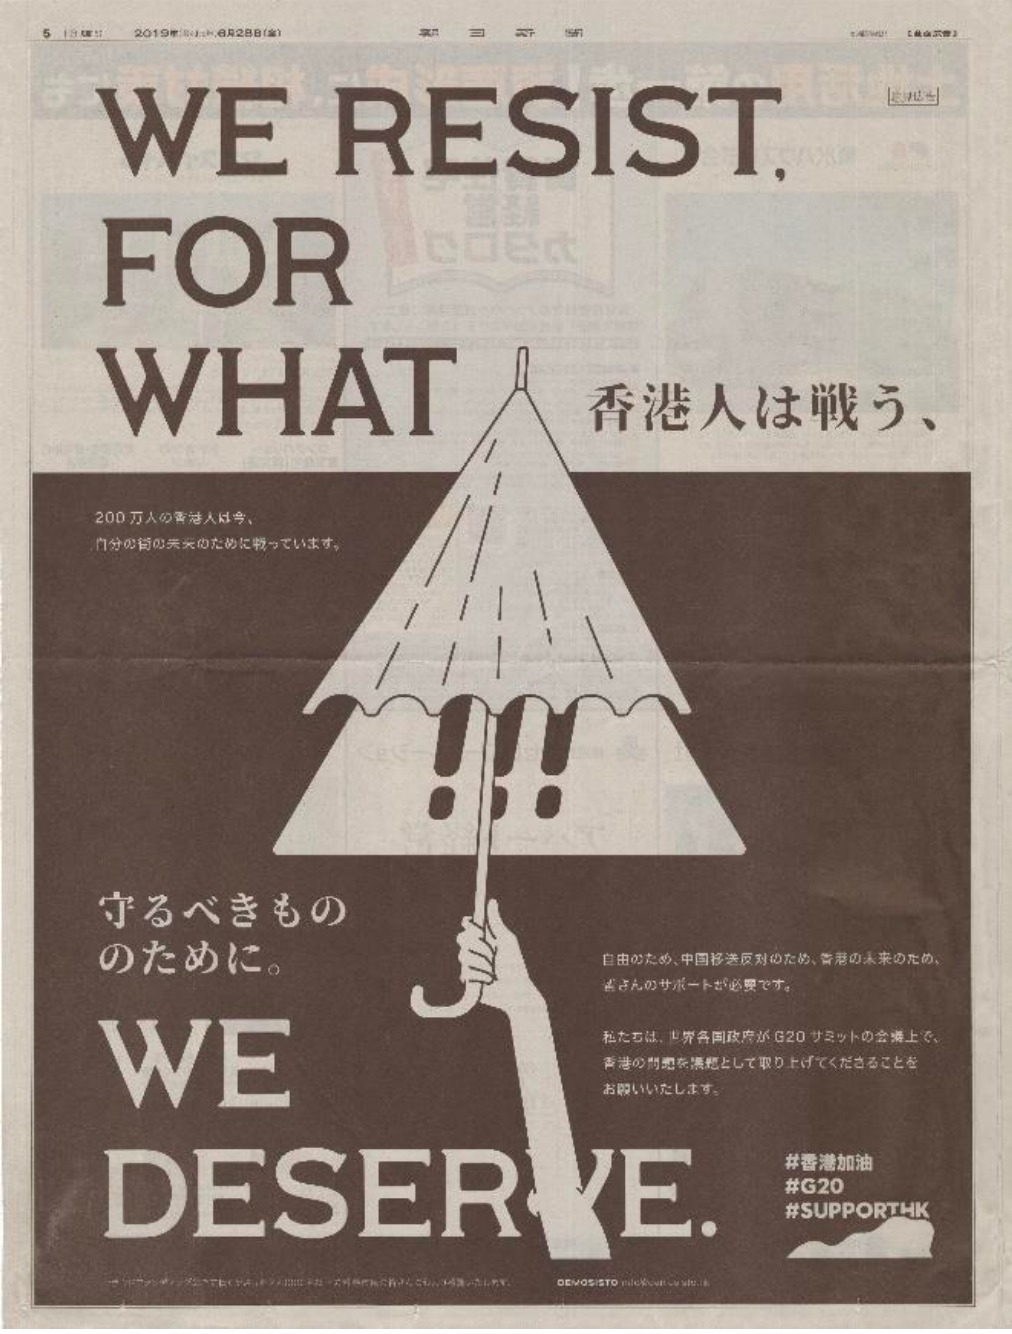 日本《朝日新闻》(The Asahi Shimbun)的广告。网图